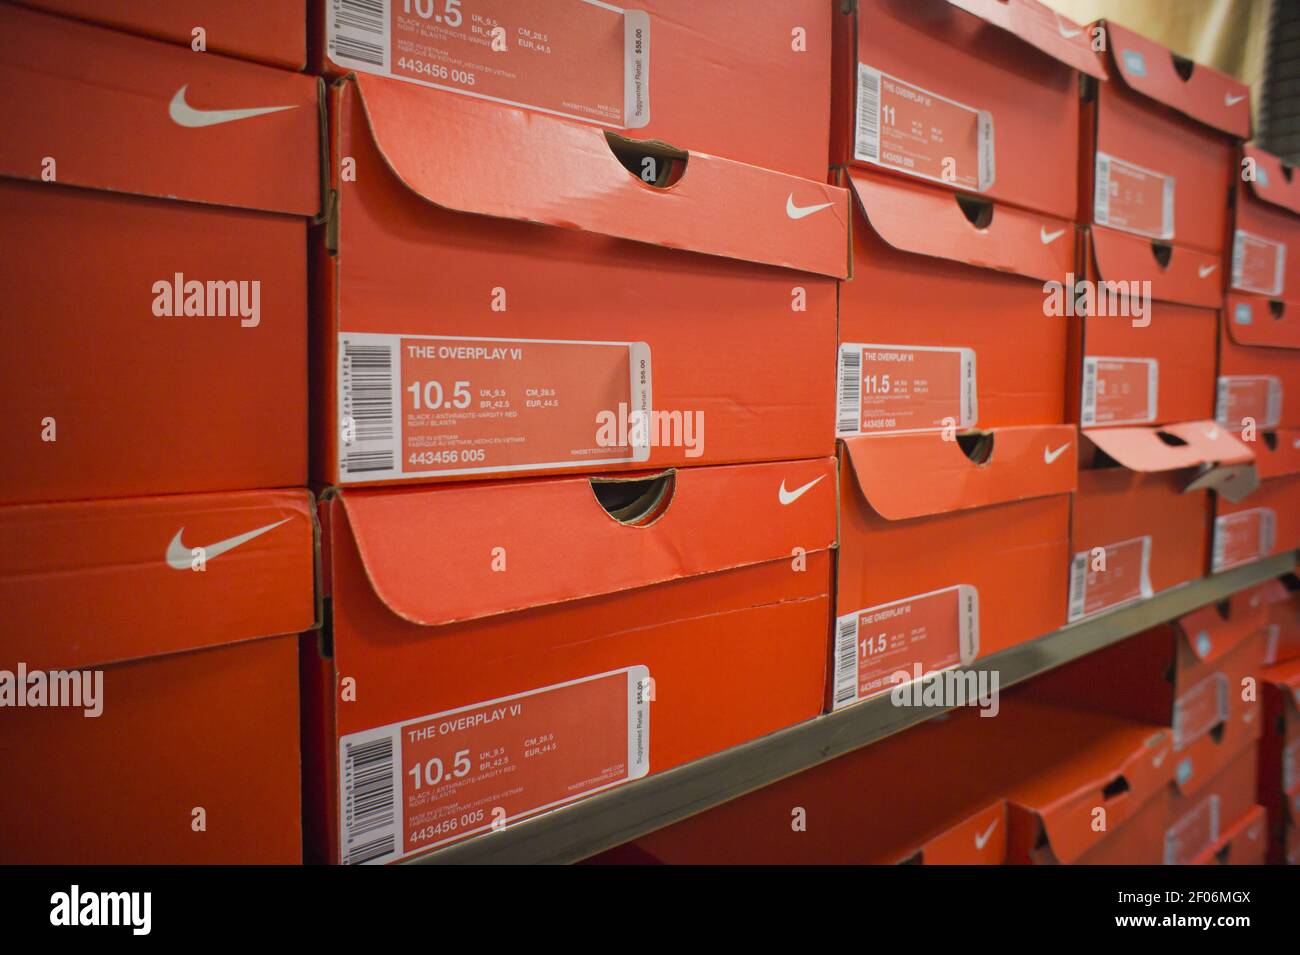 Júnior tenga en cuenta compromiso Las cajas de calzado deportivo Nike se ven en una tienda de artículos  deportivos en Nueva York el lunes, 10 de octubre de 2011. Nike informó de  los beneficios del último trimestre